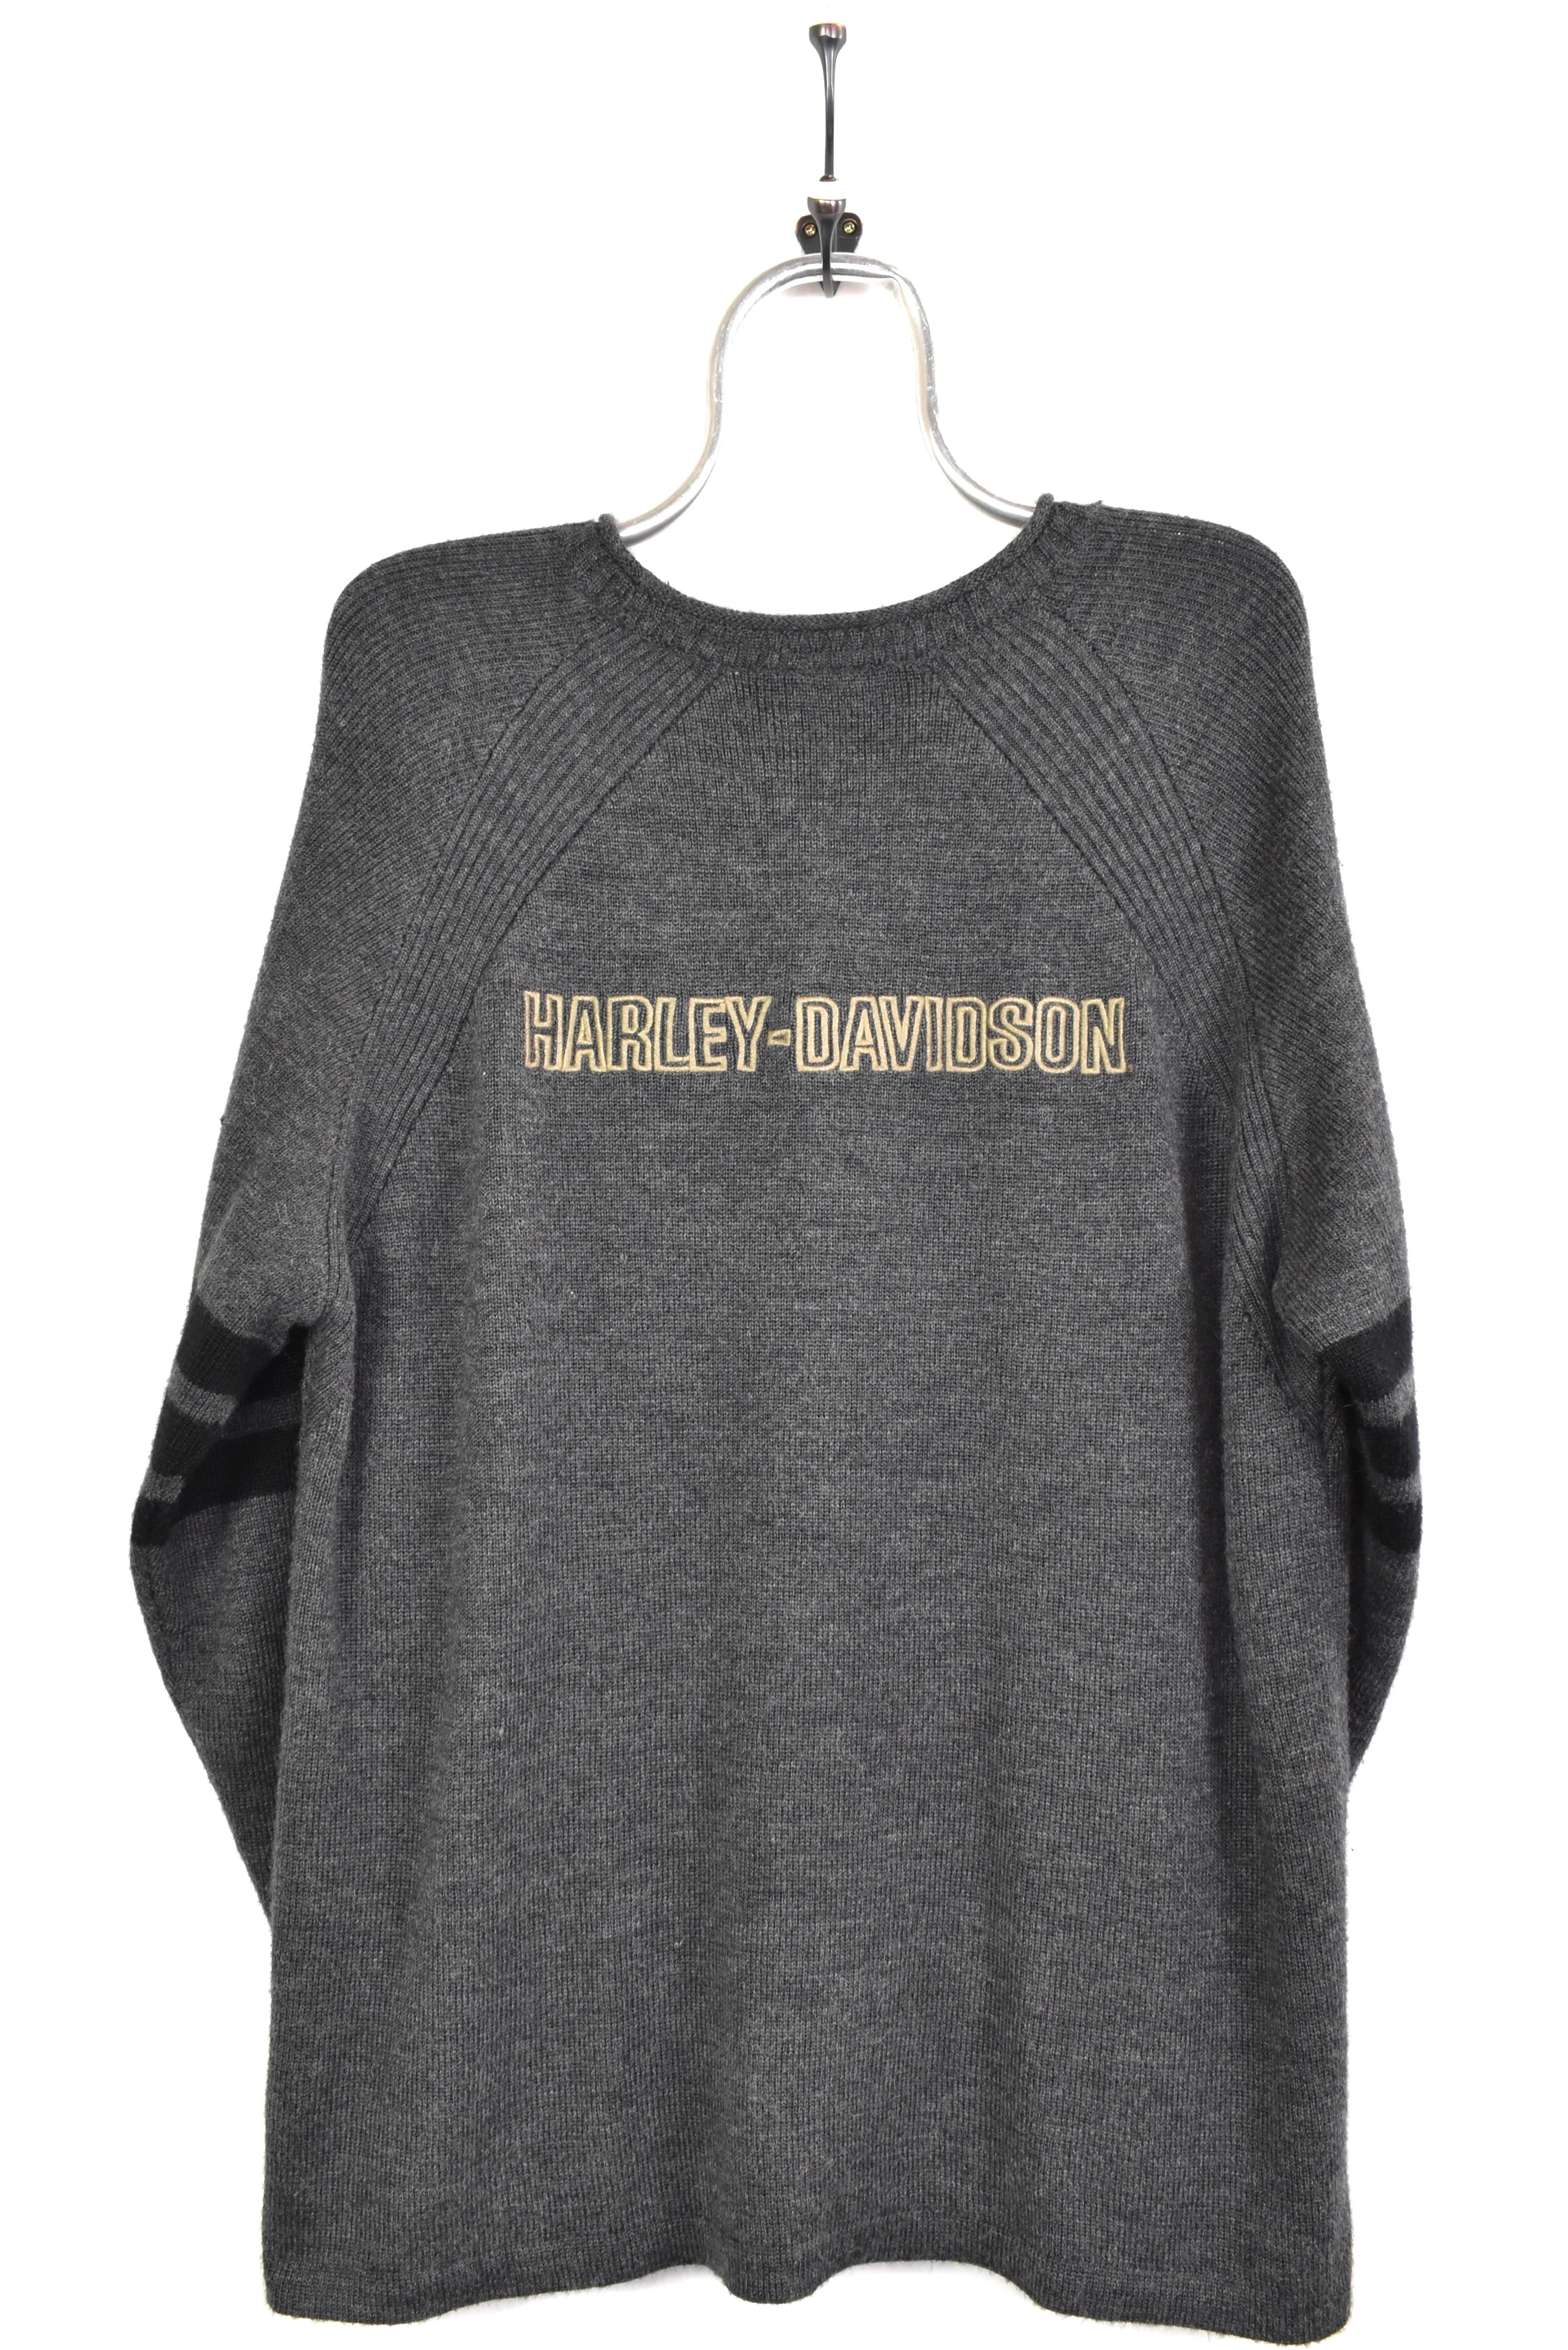 Vintage Harley Davidson embroidered knit grey sweatshirt | Large HARLEY DAVIDSON